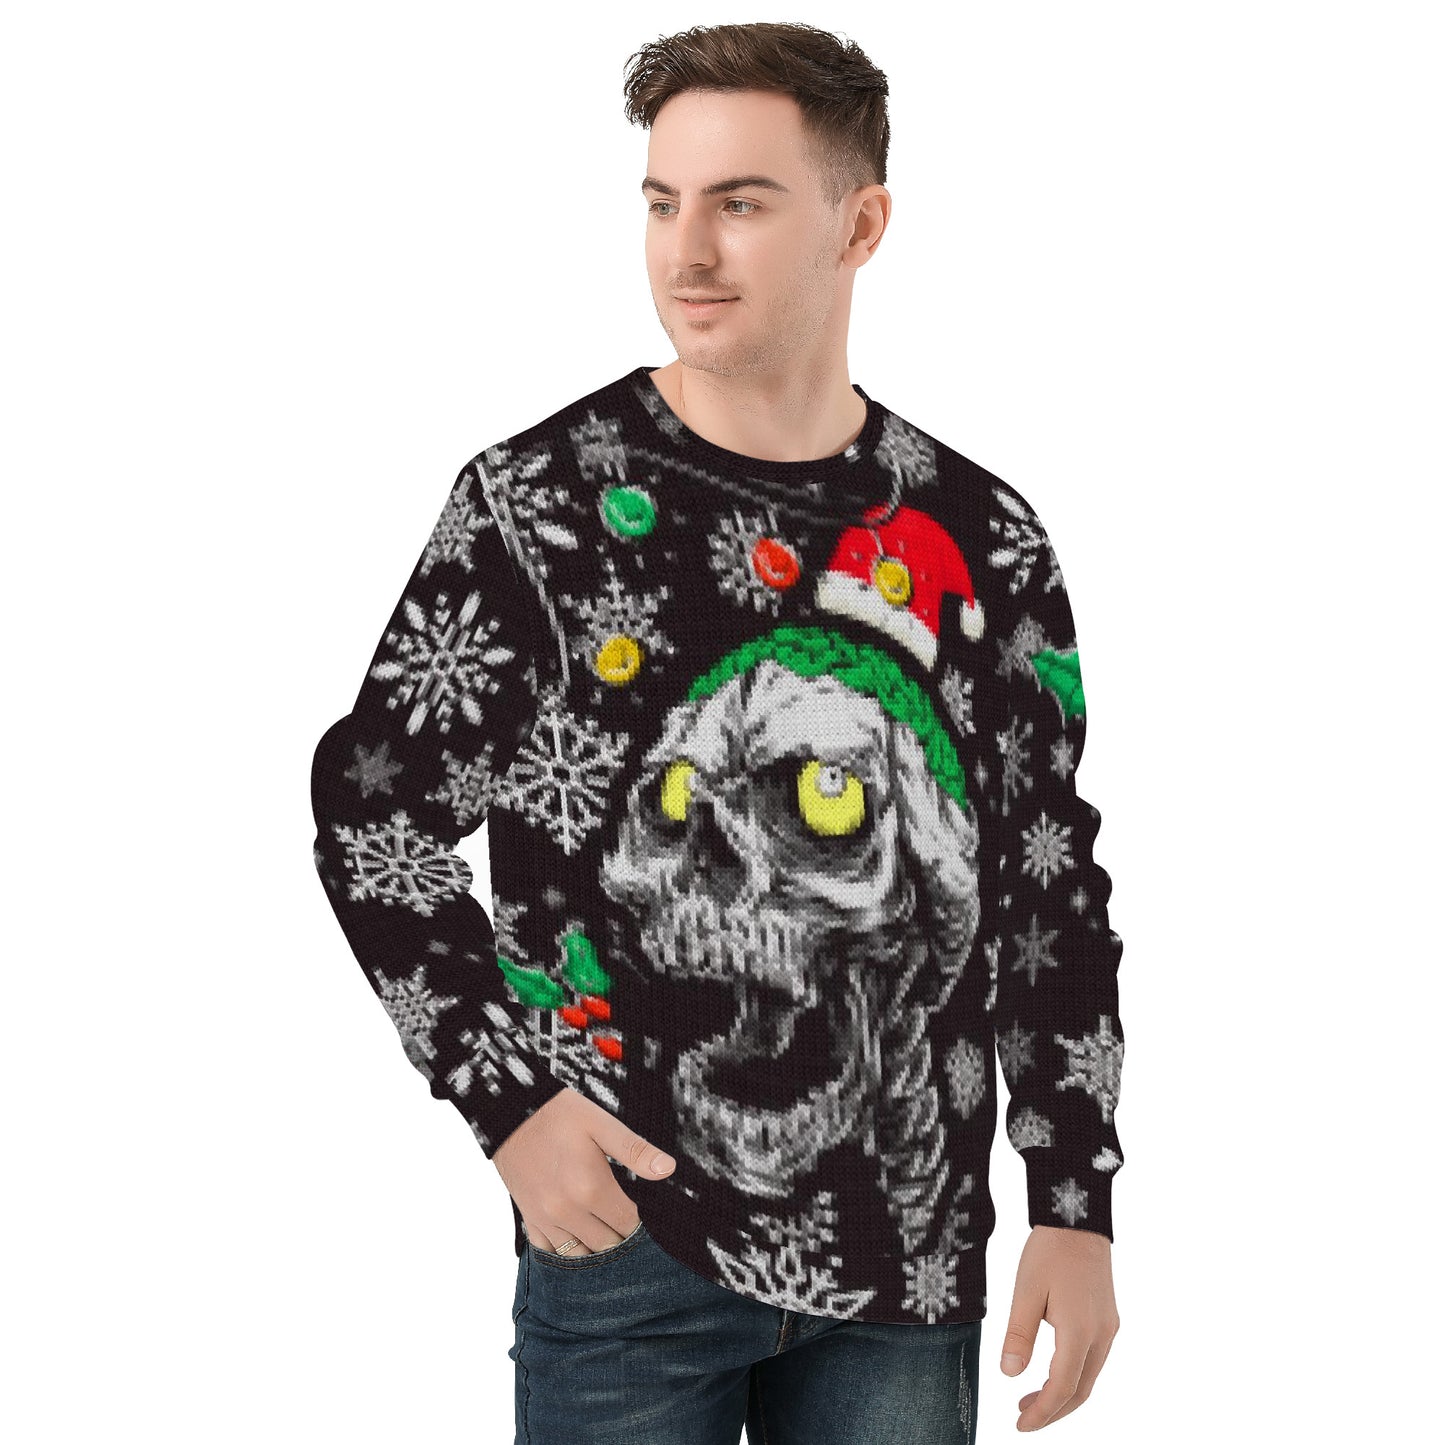 Merry Skulls Ugly Christmas Sweater style Sweatshirt